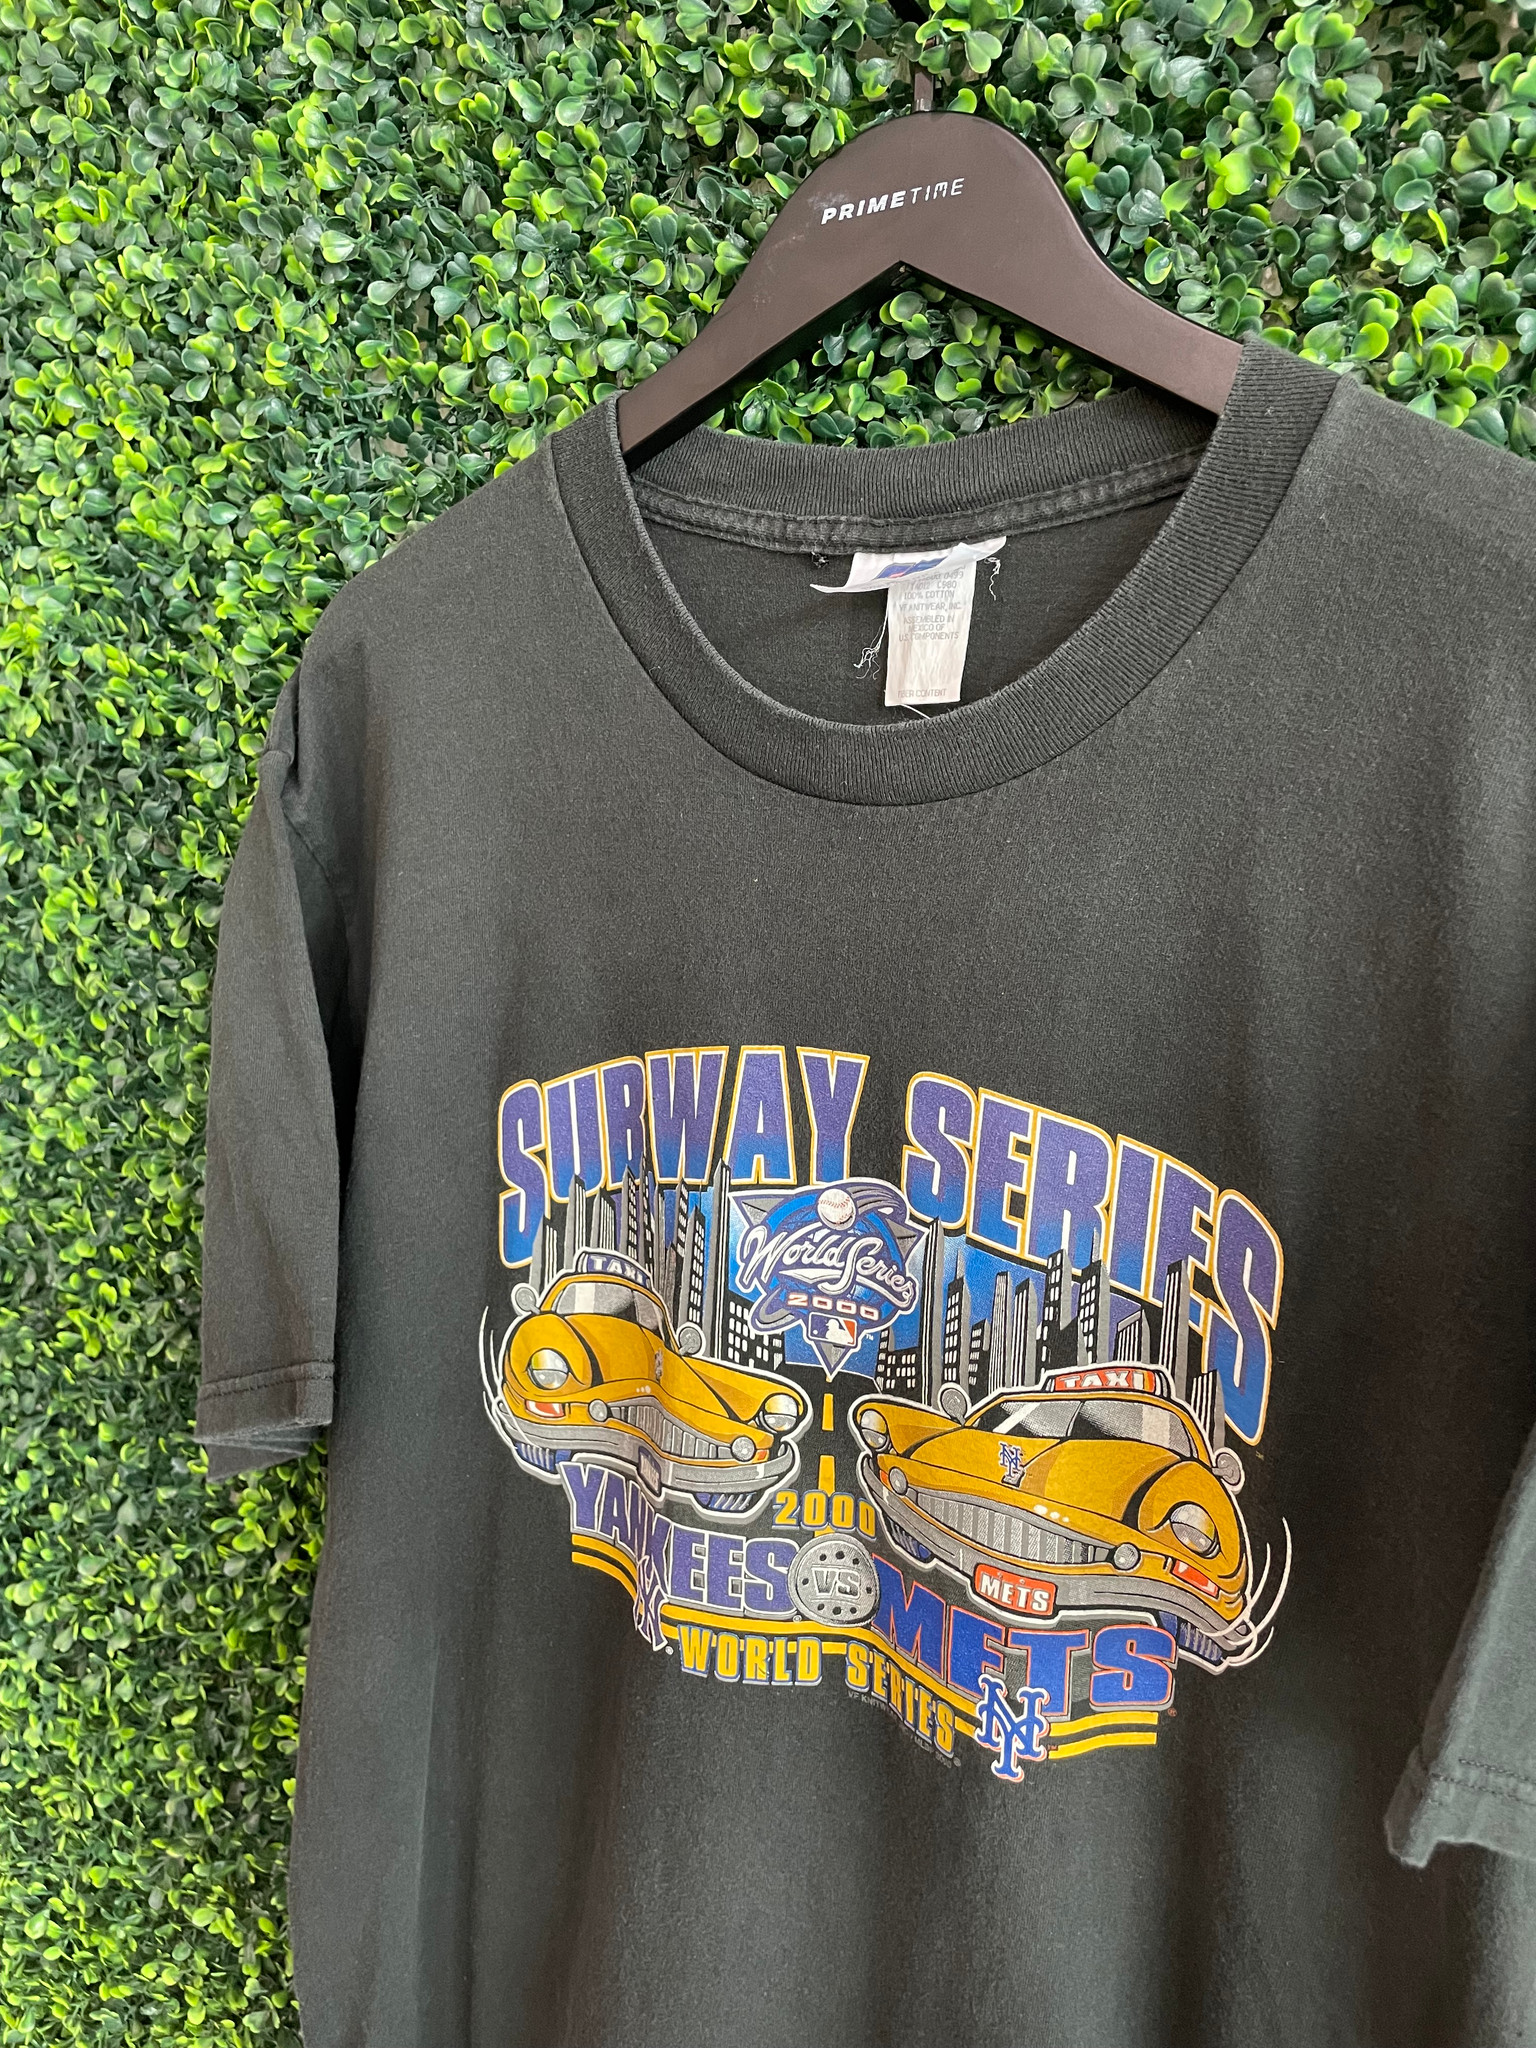 Puma, Shirts, Vintage 9s Puma Yankees Vs Mets Subway Series Tshirt